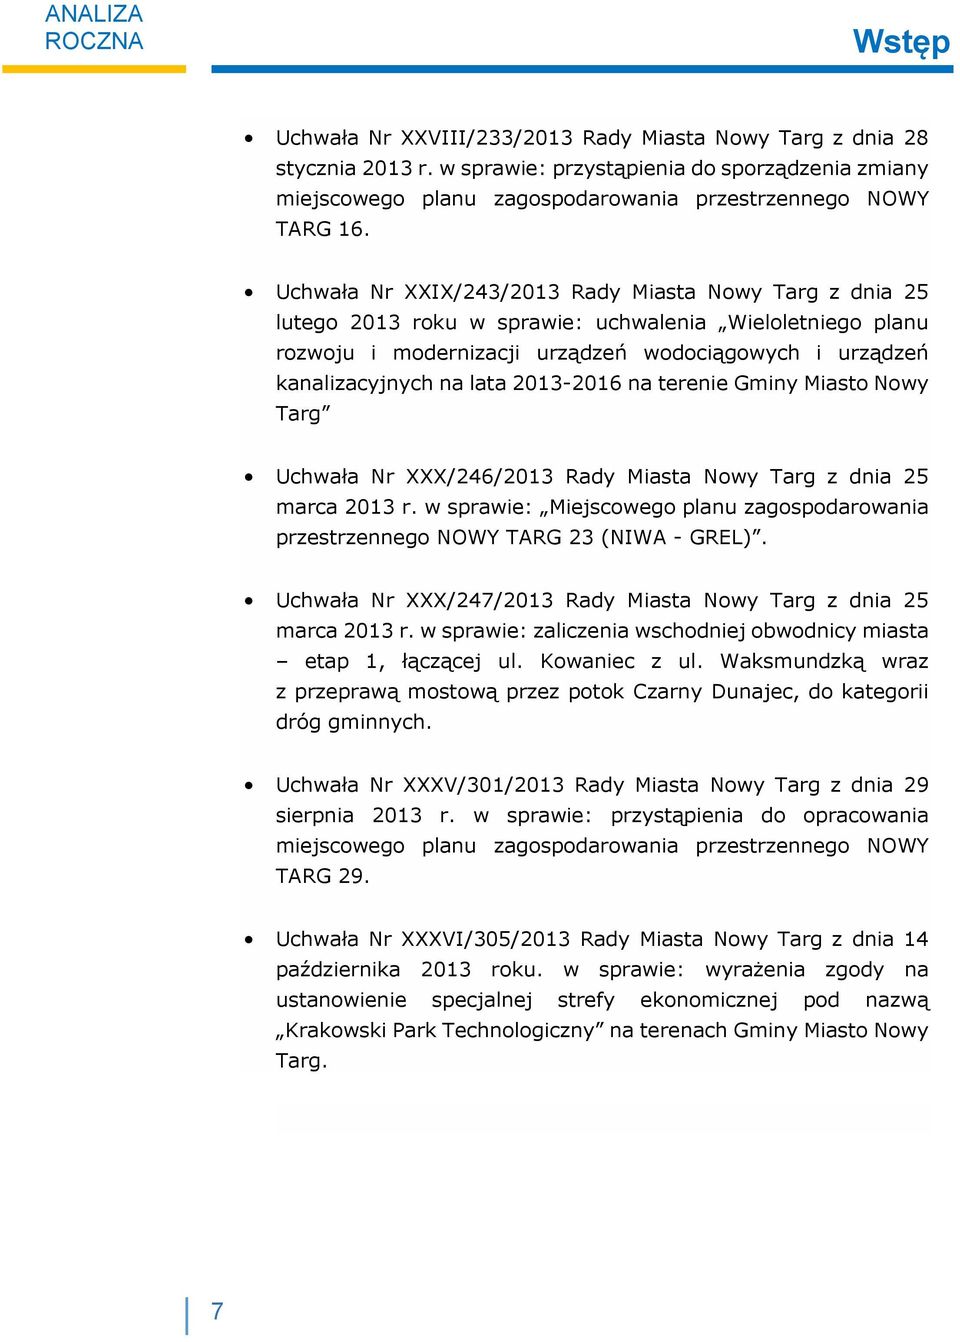 Uchwała Nr XXX/243/2013 Rady Miasta Nowy Targ z dnia 25 lutego 2013 roku w sprawie: uchwalenia Wieloletniego planu rozwoju i modernizacji urządzeń wodociągowych i urządzeń kanalizacyjnych na lata